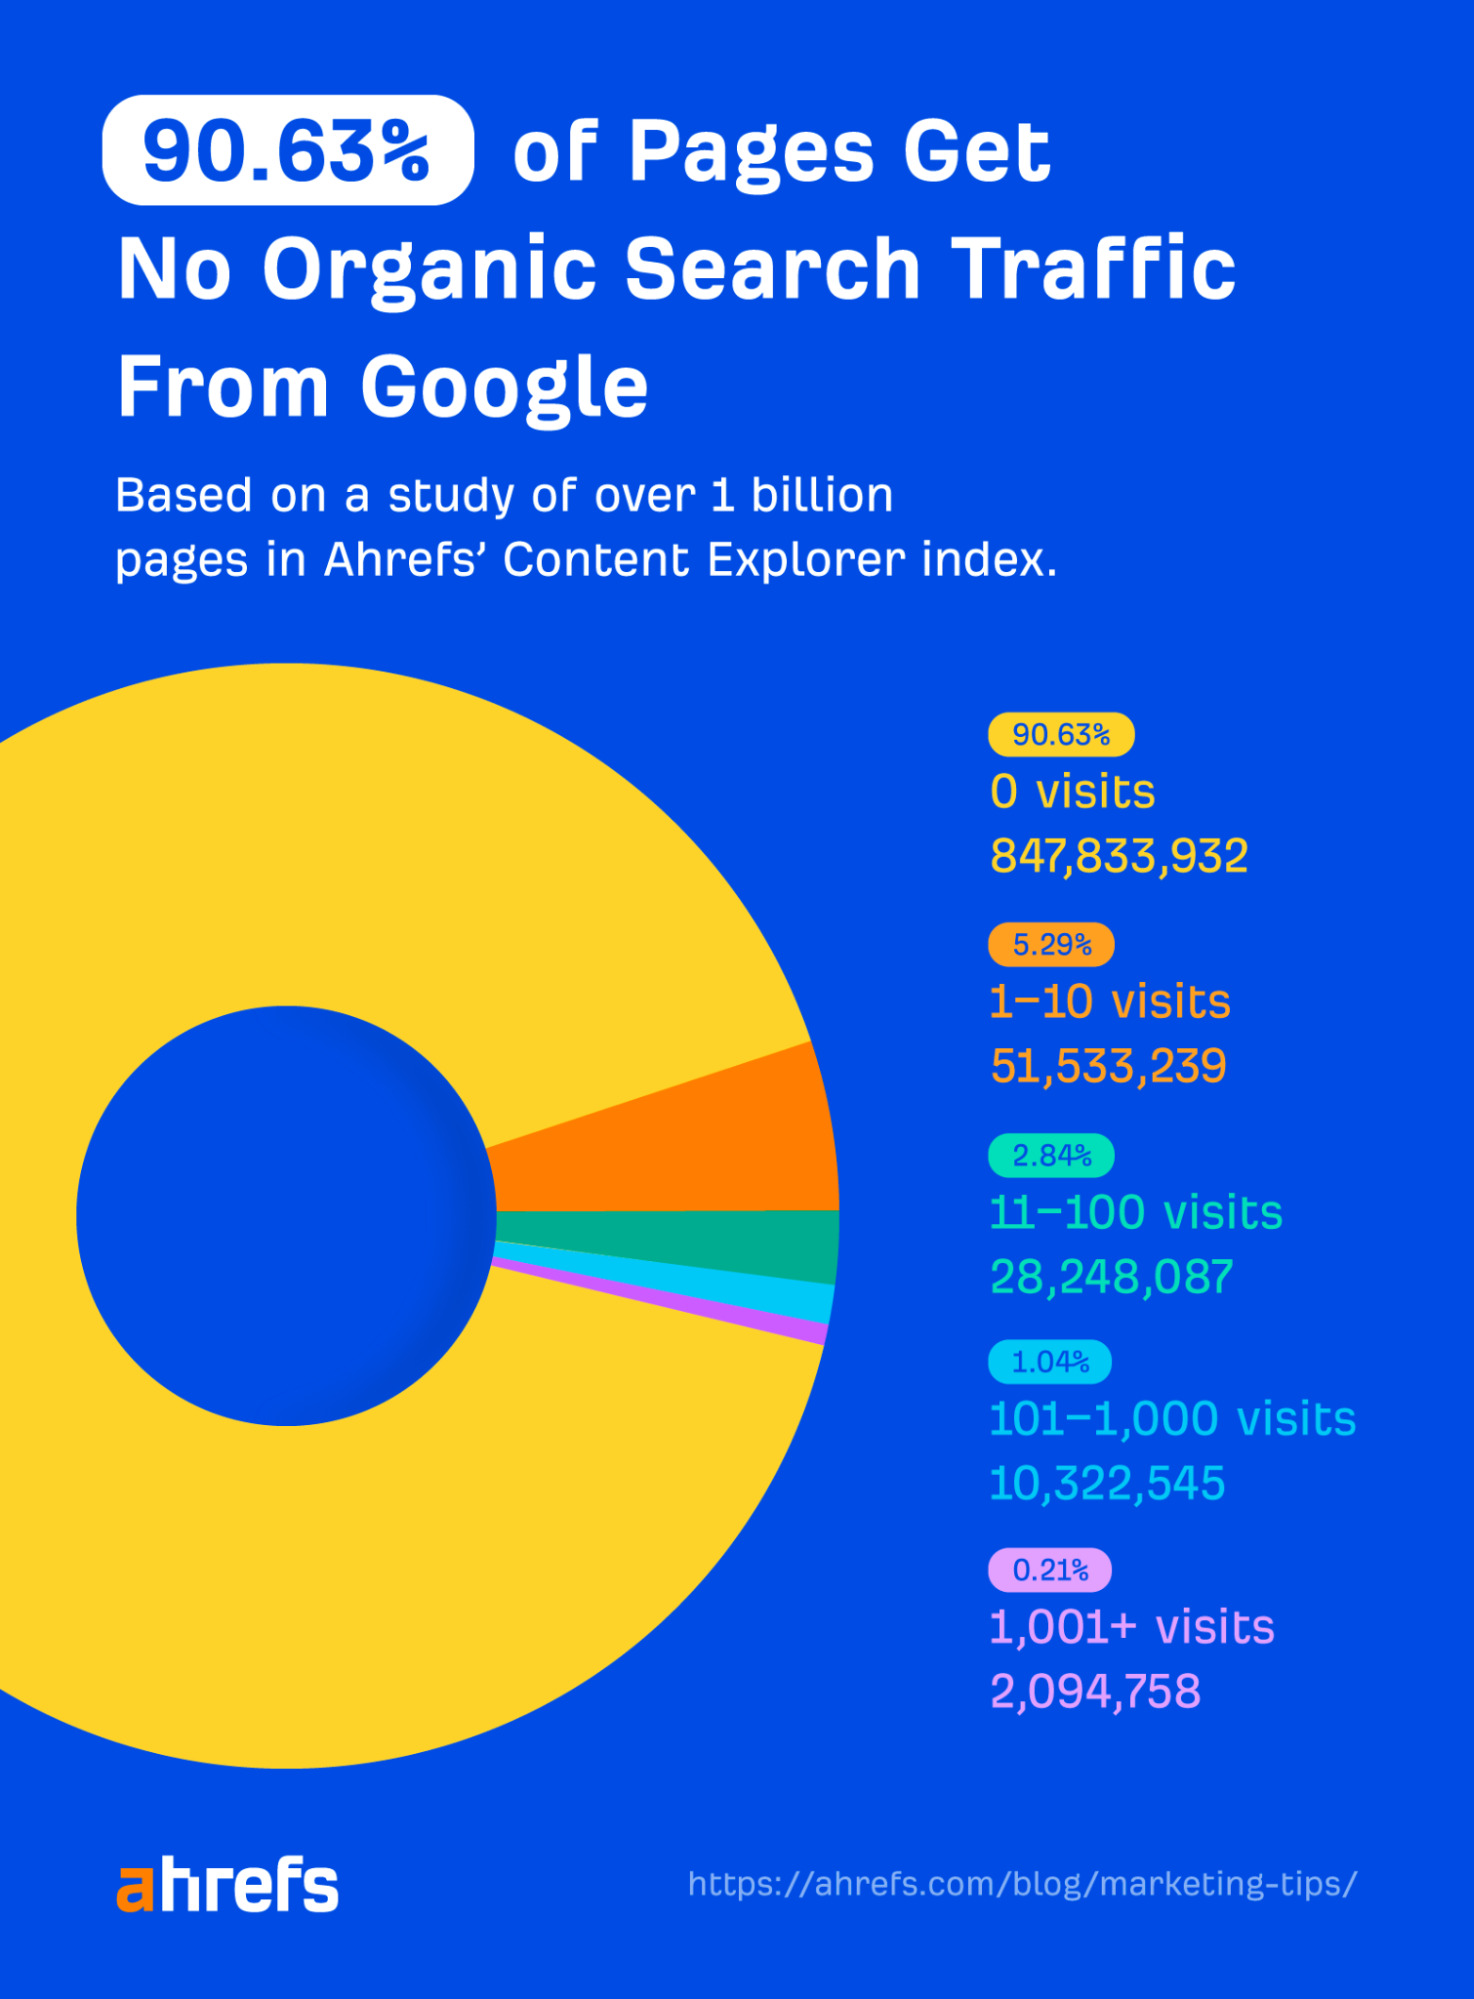 Según el estudio de Ahrefs, el 90,63% de las webs no generan tráfico desde Google